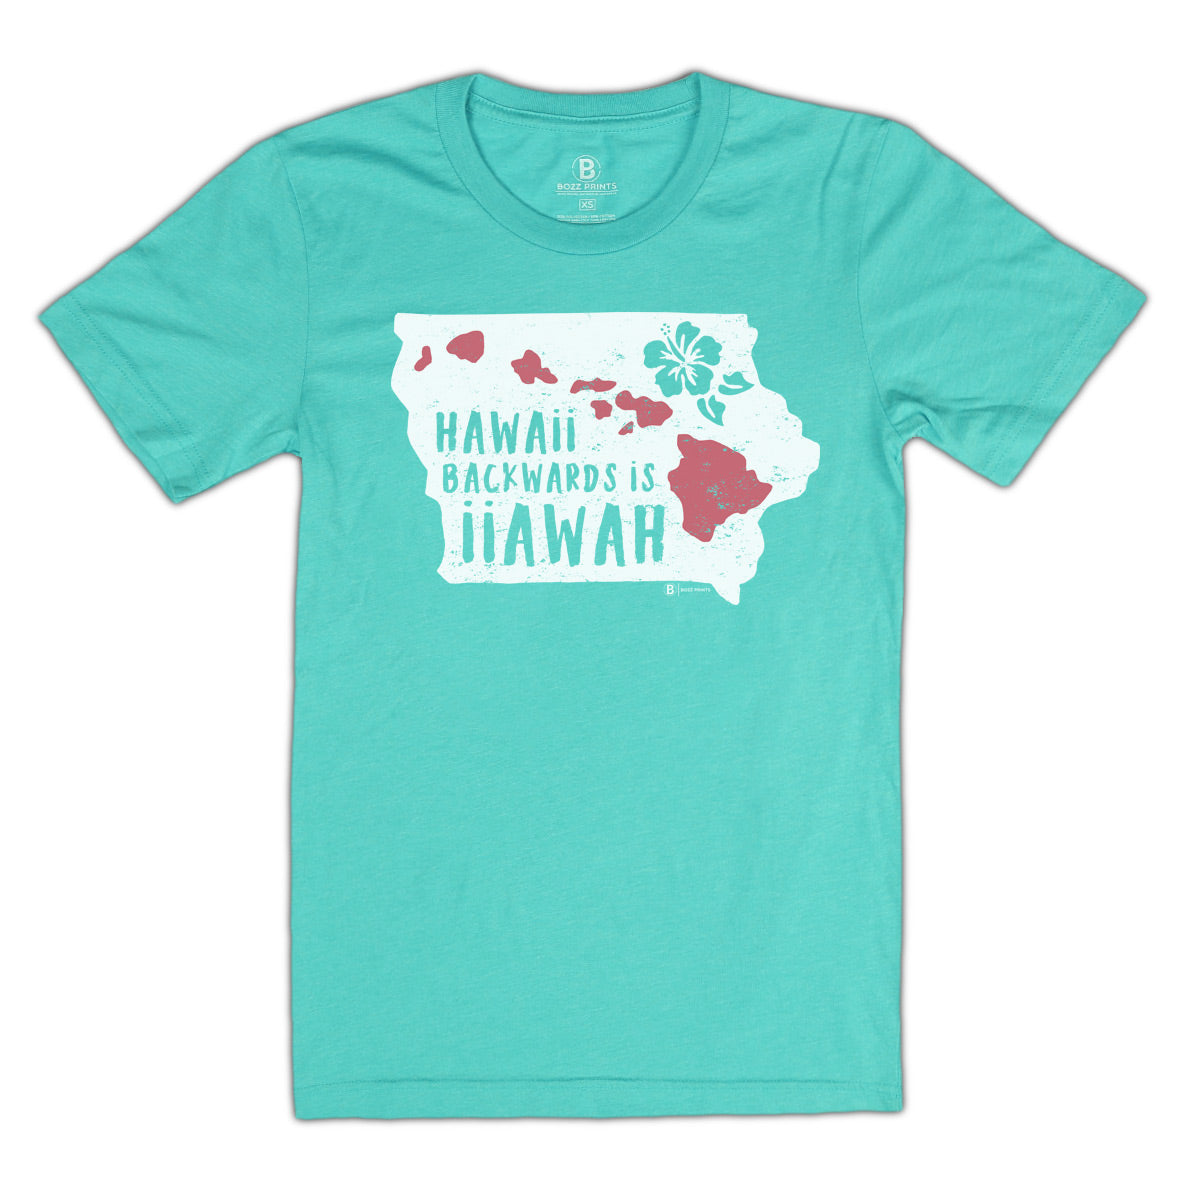 Hawaii Backwards is Iiawah Seafoam T-Shirt - Bozz Prints